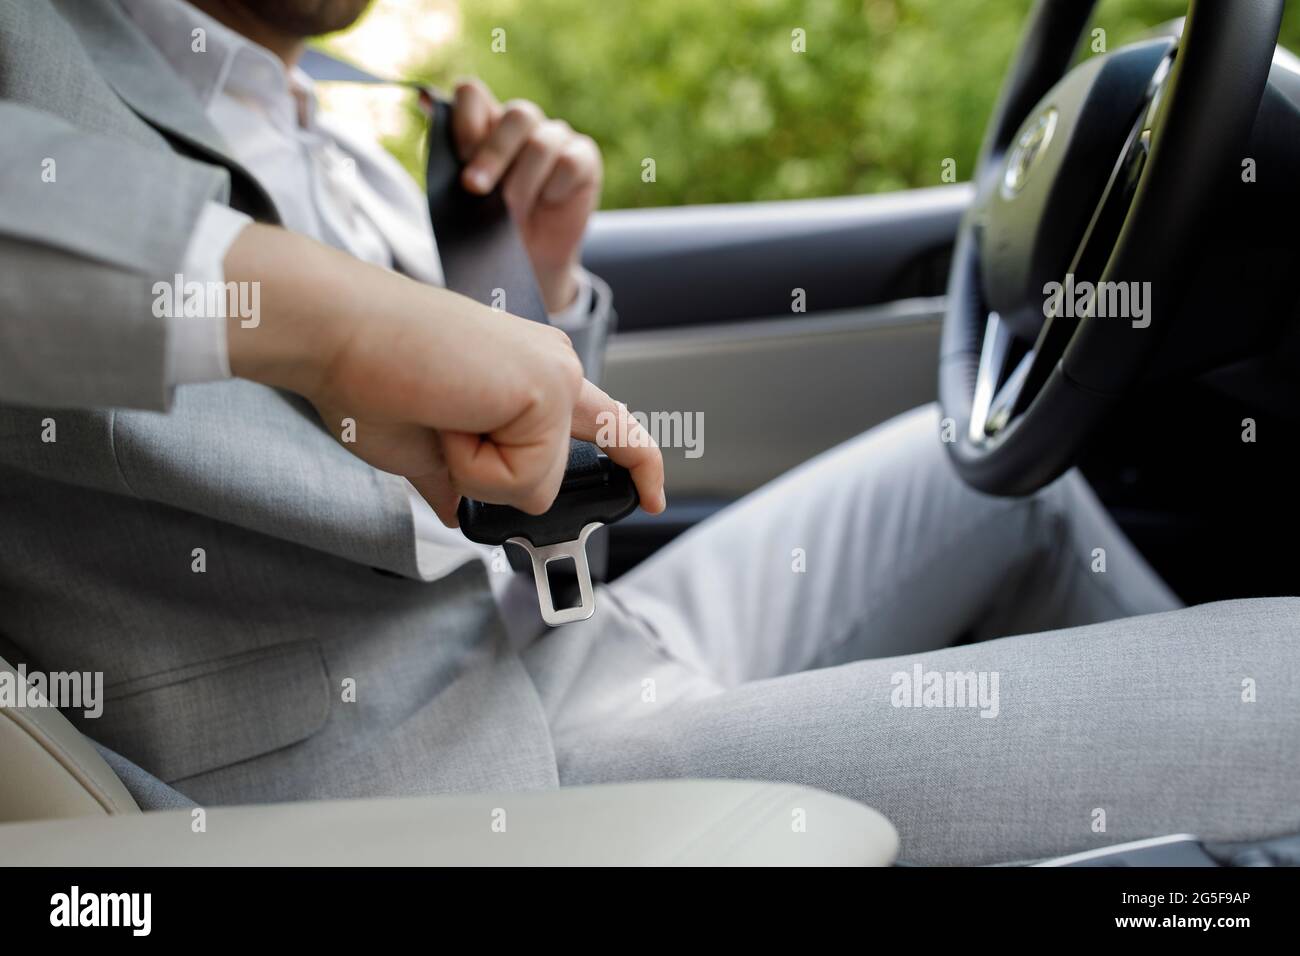 Vai al lavoro da solo. La mano maschile fissa la cintura di sicurezza  dell'auto mentre si è seduti all'interno dell'auto prima di guidare e di  procedere in sicurezza. Primo piano del pilota